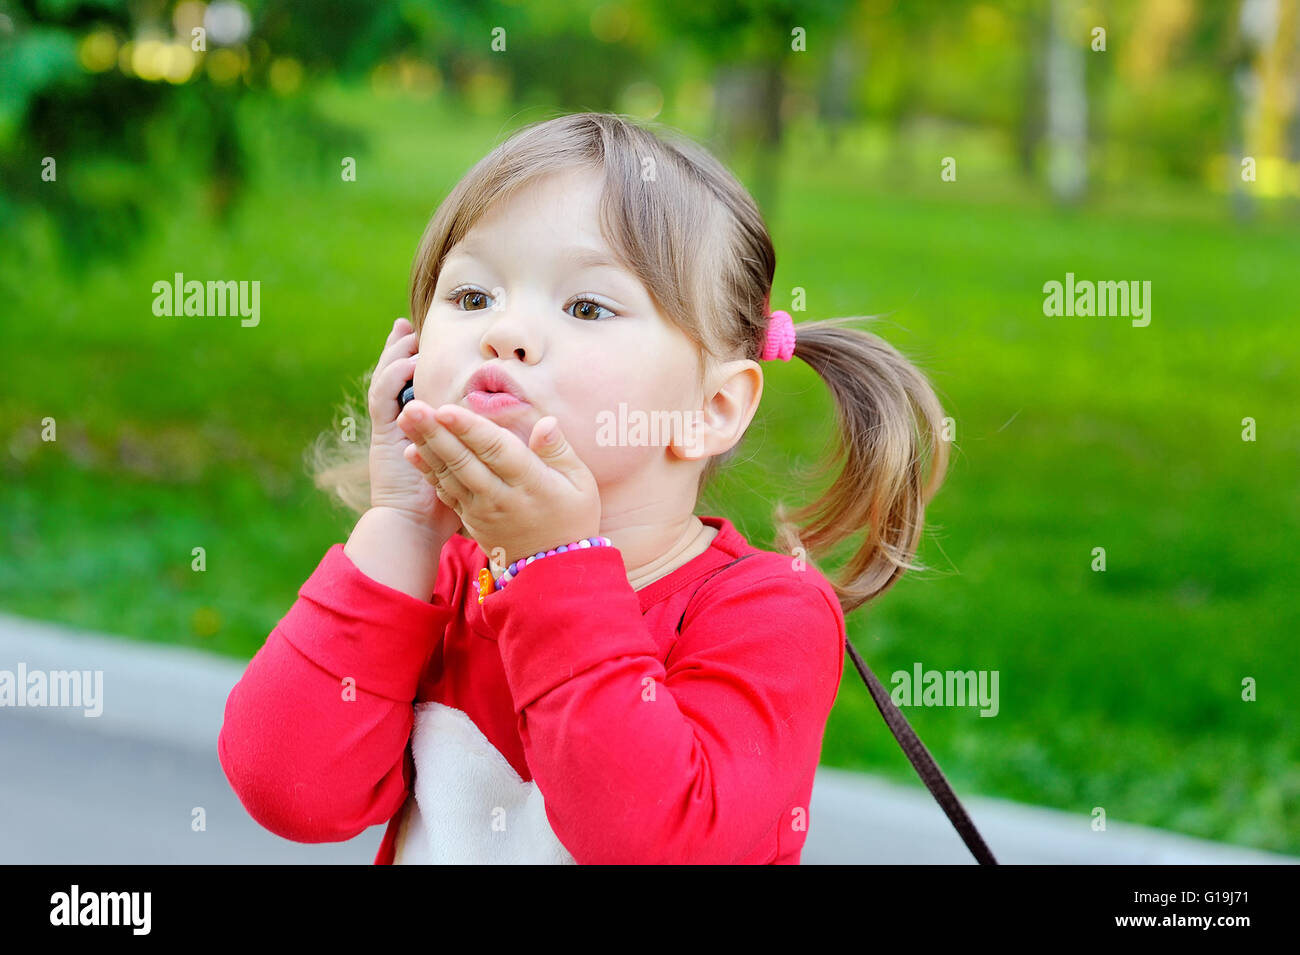 kleines Mädchen sendet einen Luft-Kuss Stockfoto